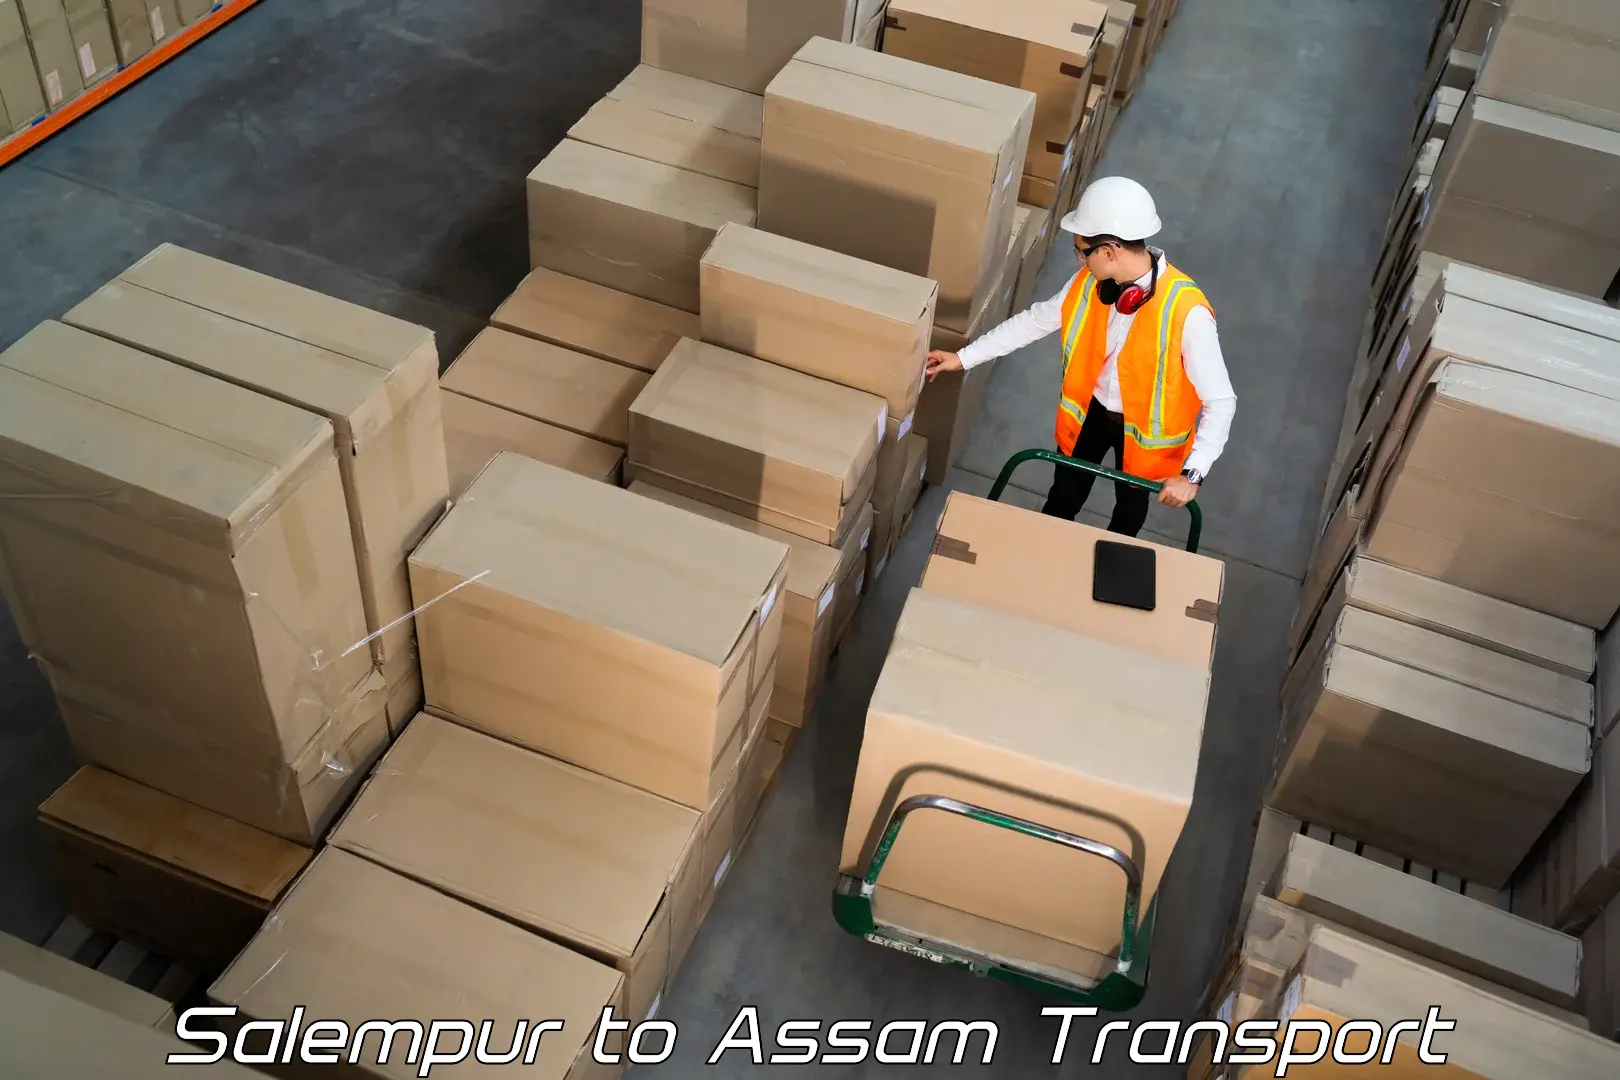 Vehicle courier services Salempur to Lala Assam